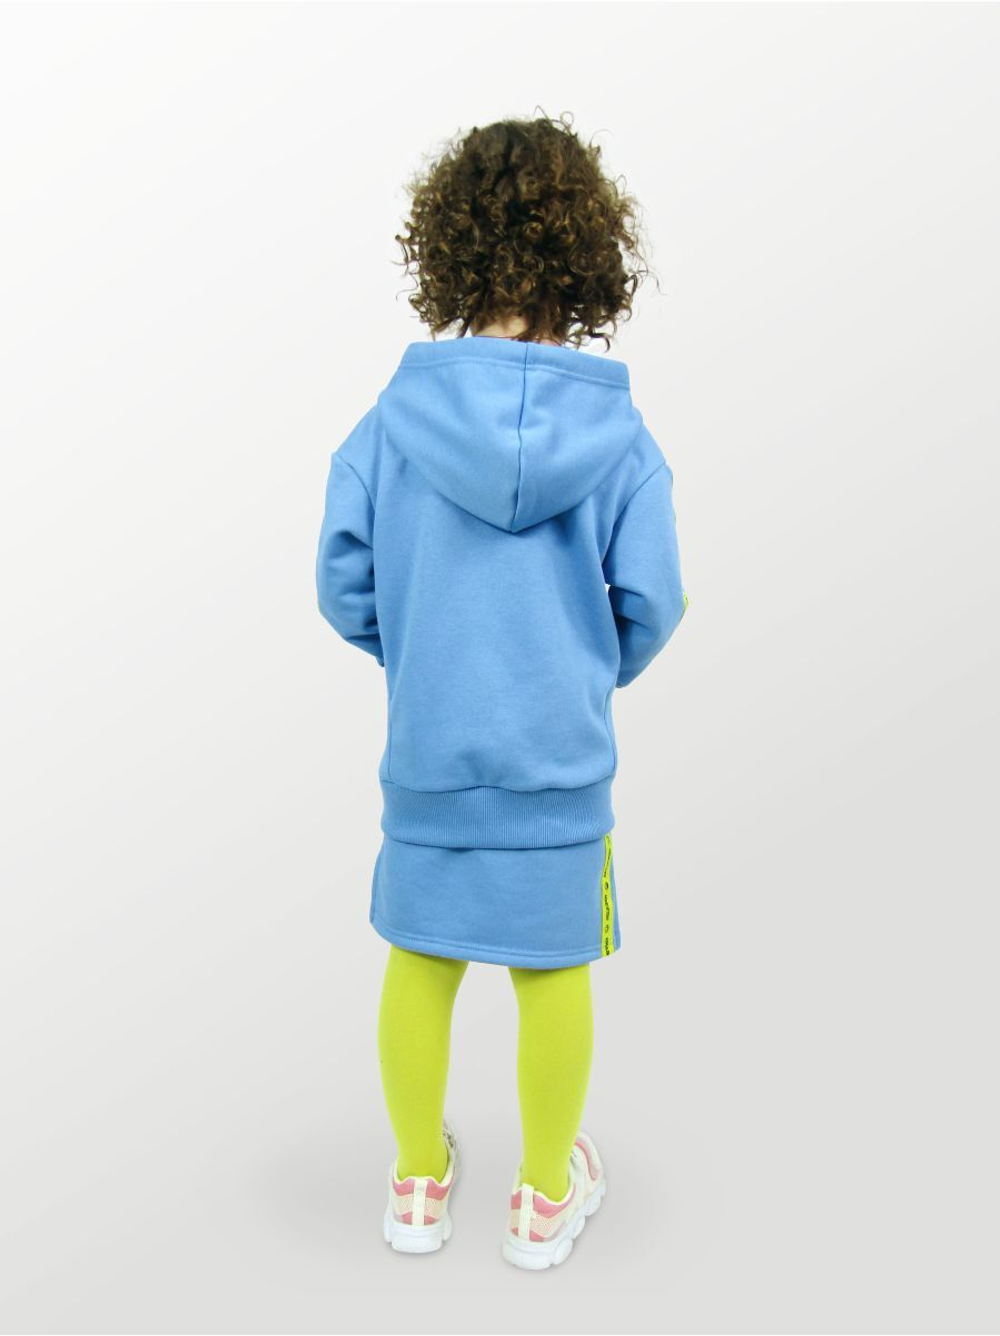 Худи для детей, модель №1, рост 98 см, голубой